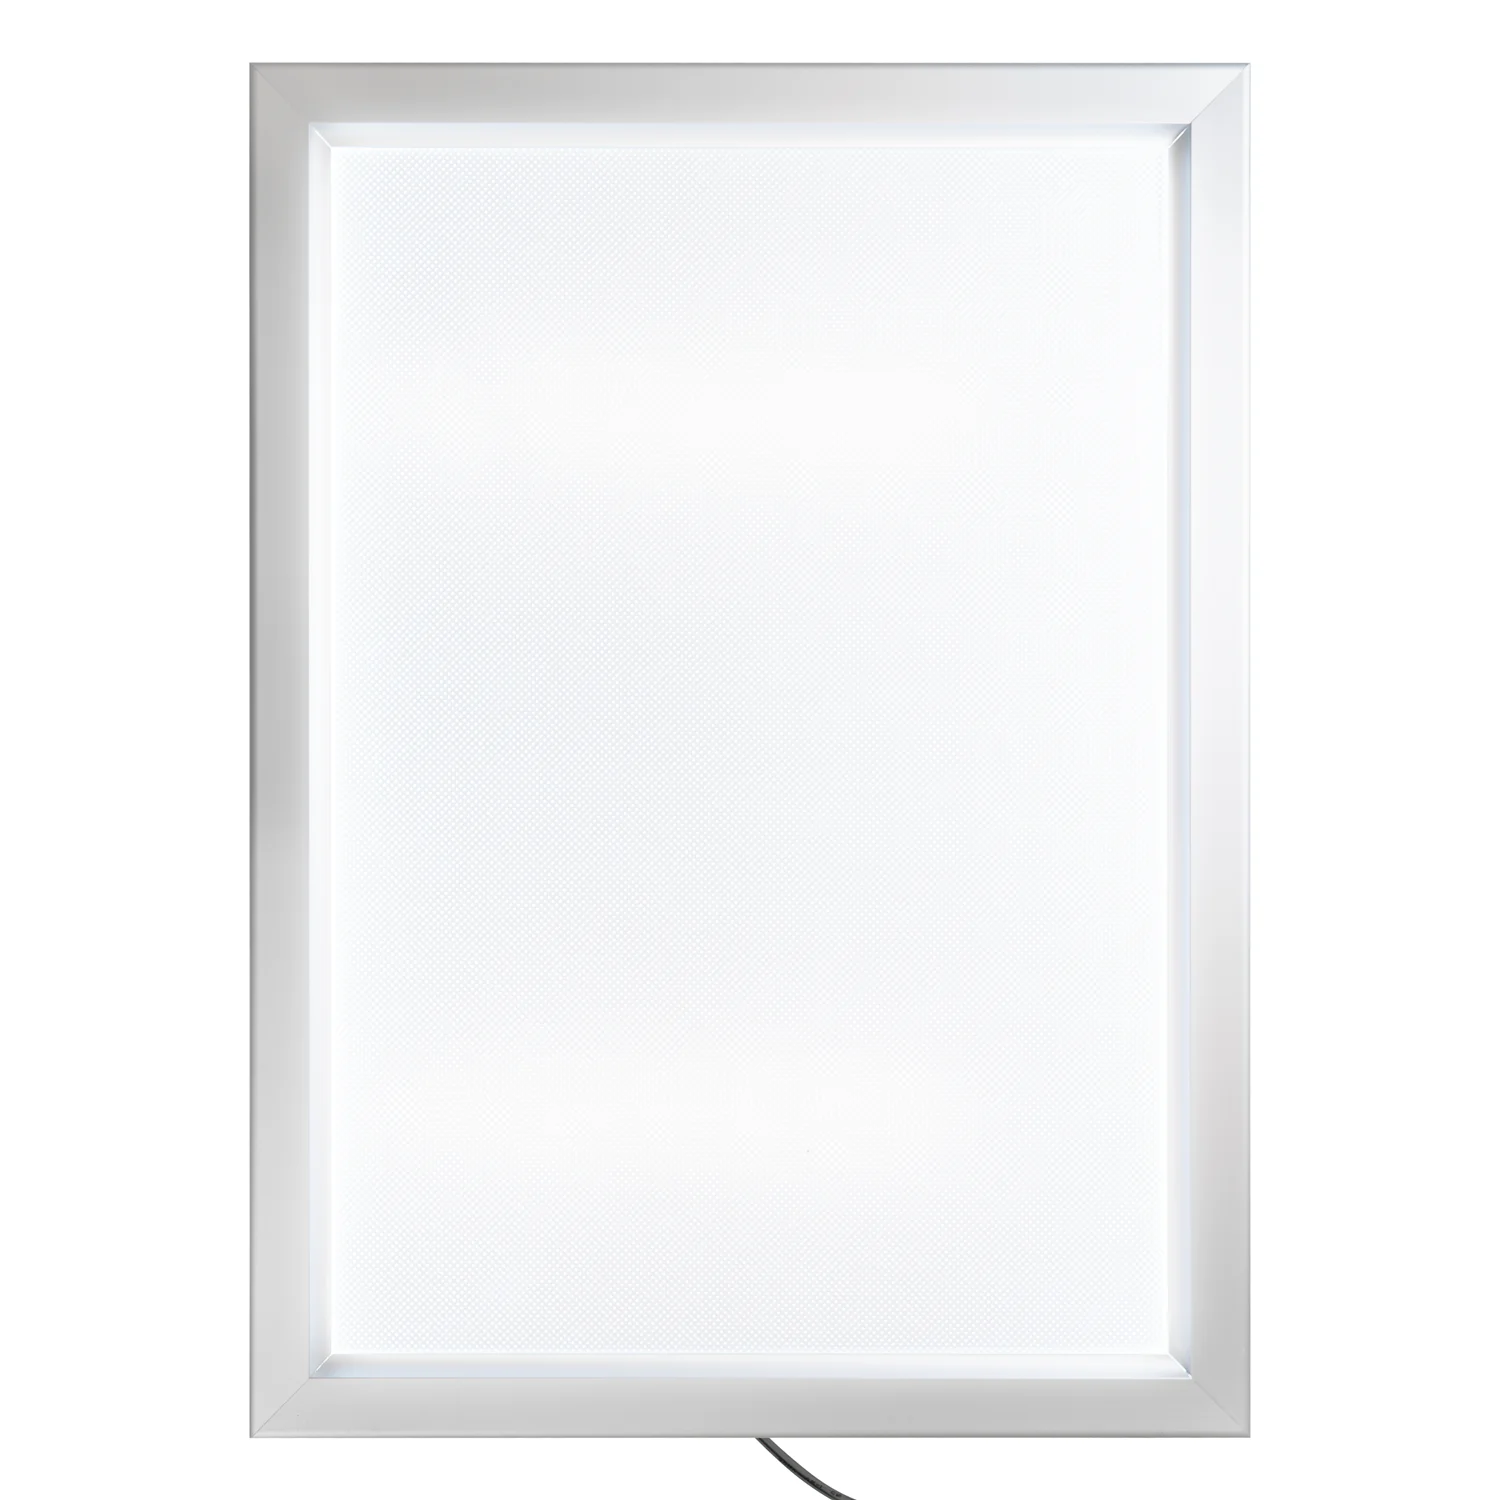 OfficeCity plakátkeret, poszterkeret fali A2 méret, ezüst 45mm-es kerettel, szögletes sarokkal, LED világítással (SFN45-A2-LIGHT-SILV)